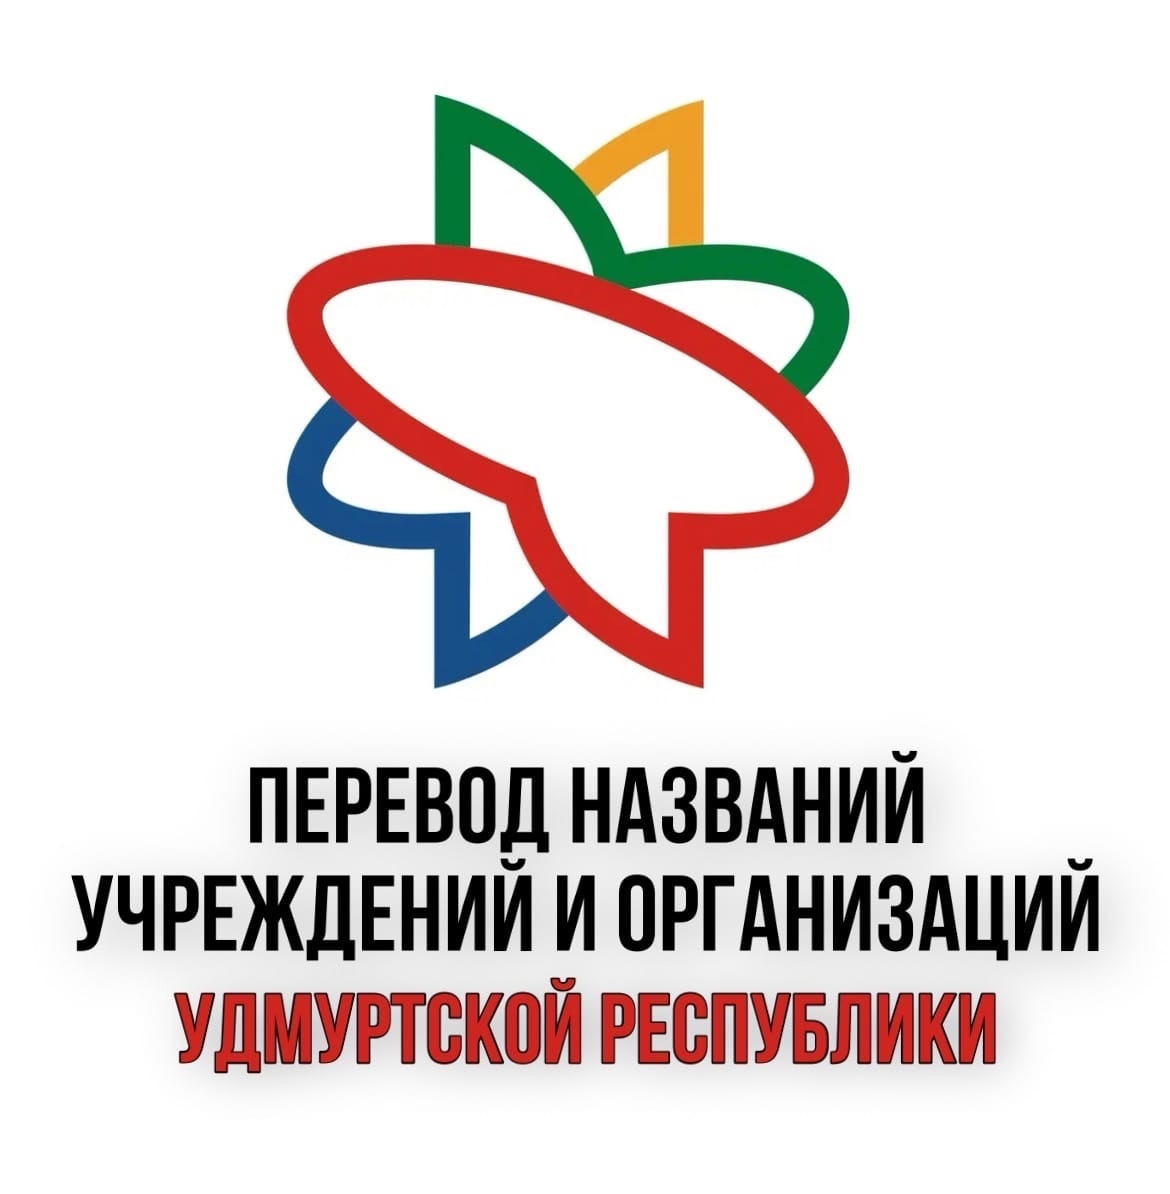 Министерство национальной политики Удмуртии оказывает услугу по переводам текстов с русского языка на удмуртский язык